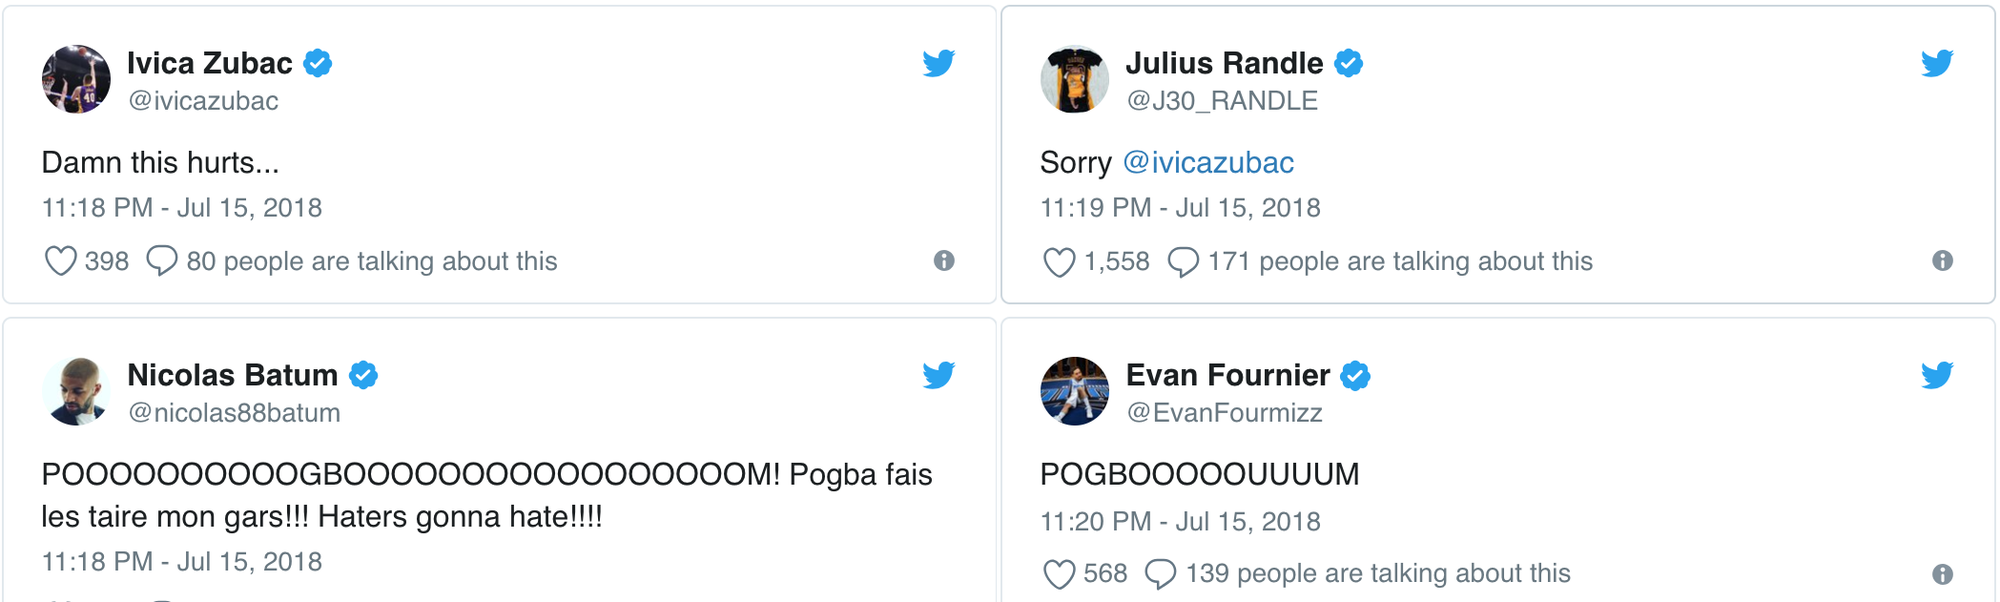 Sống lại phản ứng của các cầu thủ NBA khi Pháp đánh bại Croatia tại Chung kết World Cup 2018 - Ảnh 9.